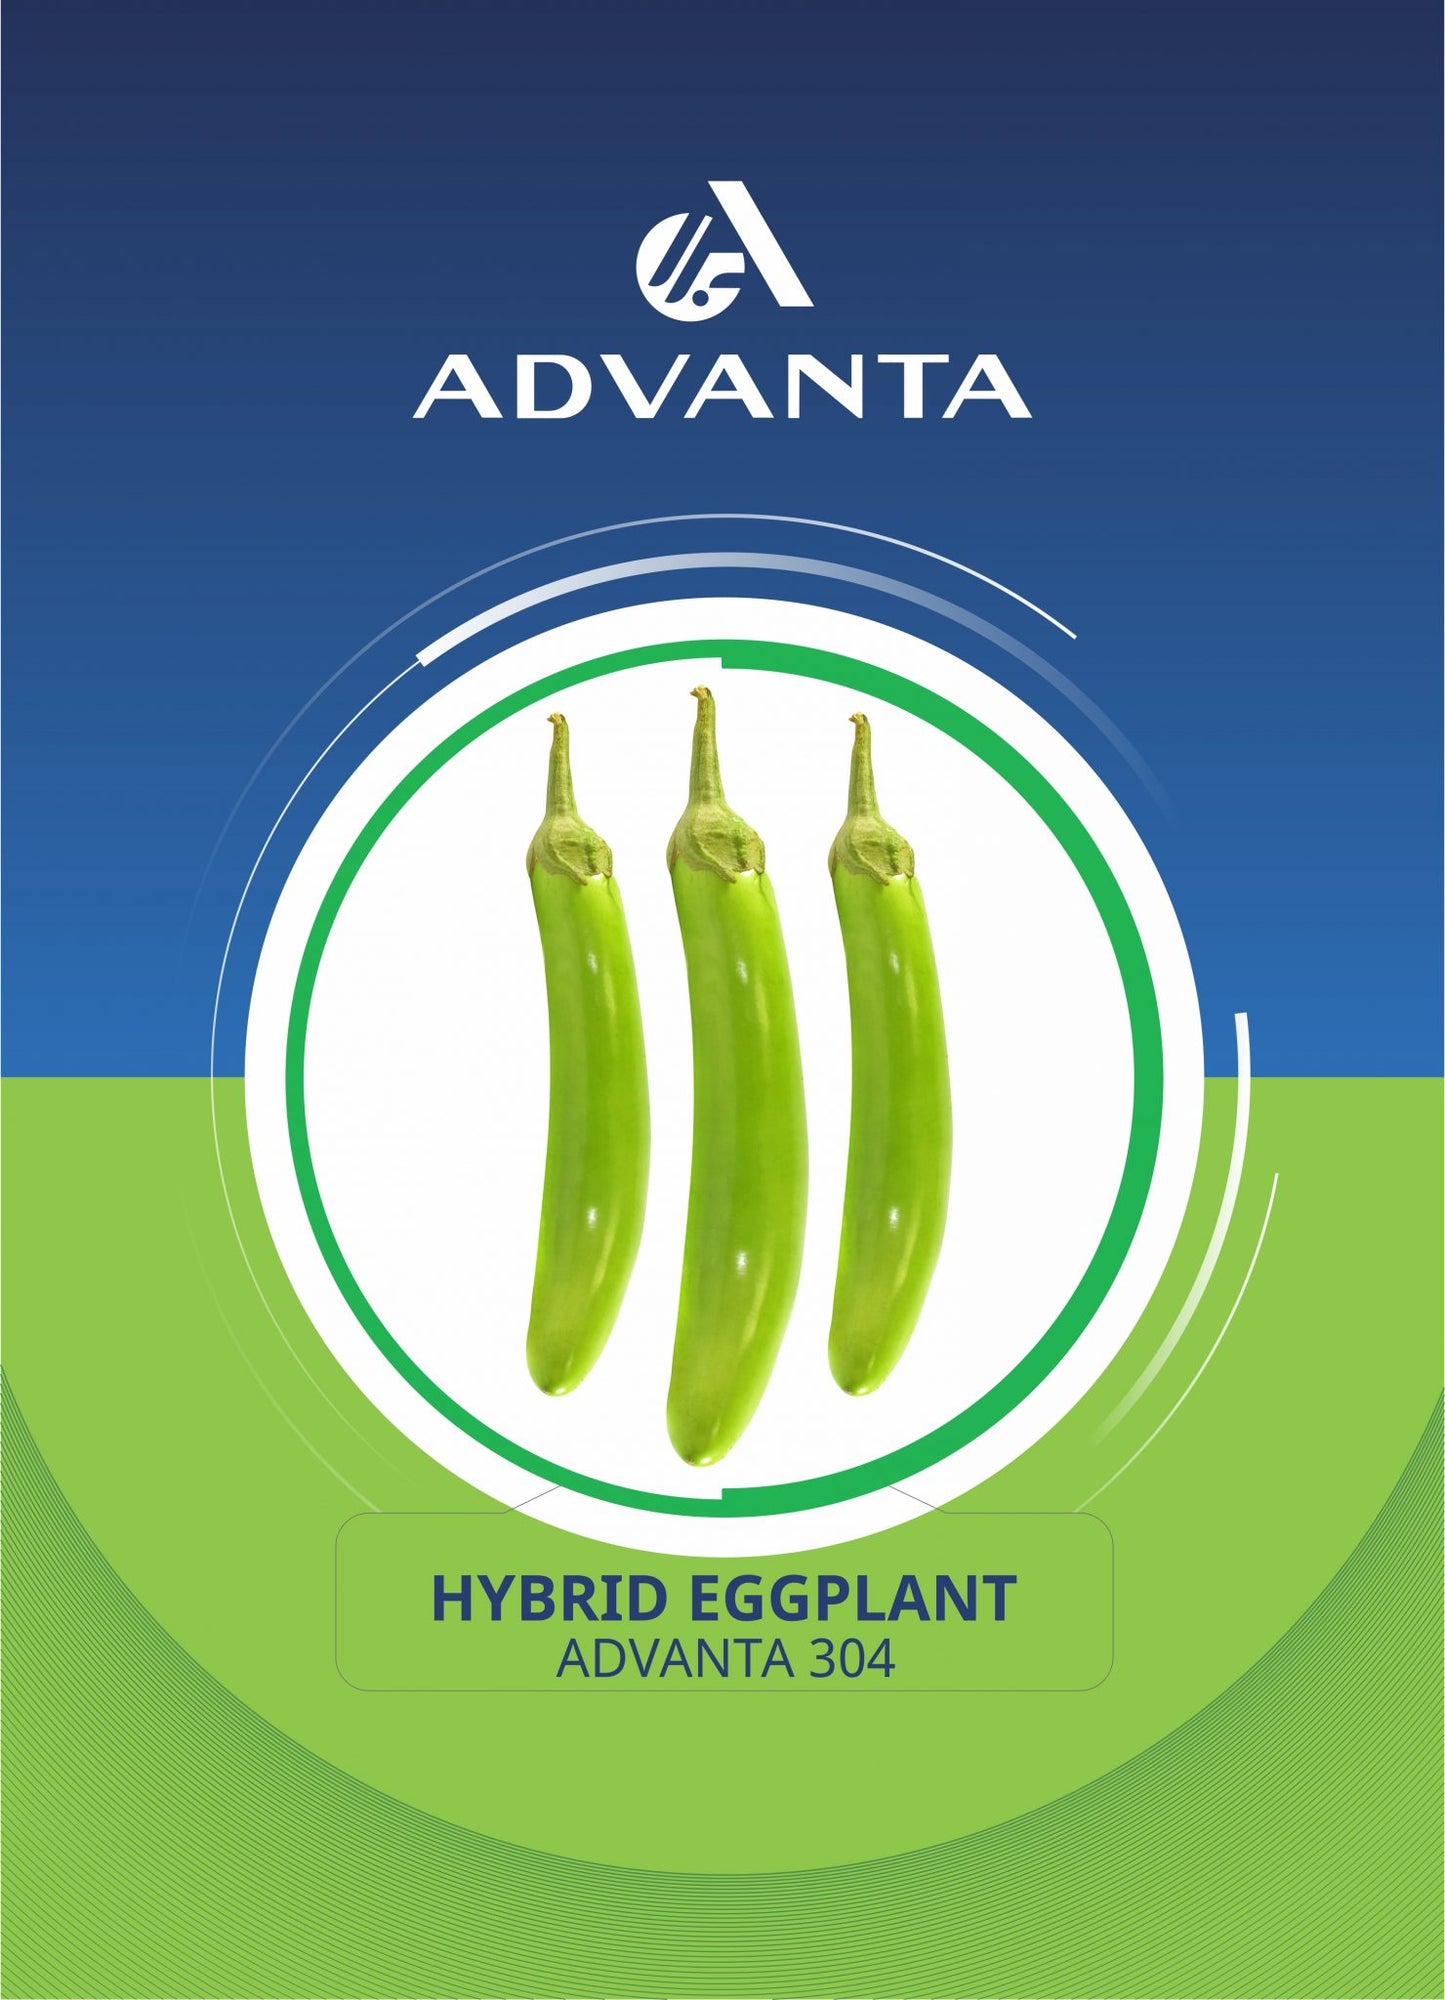 Advanta 304 Hybrid Eggplant Seeds 5g